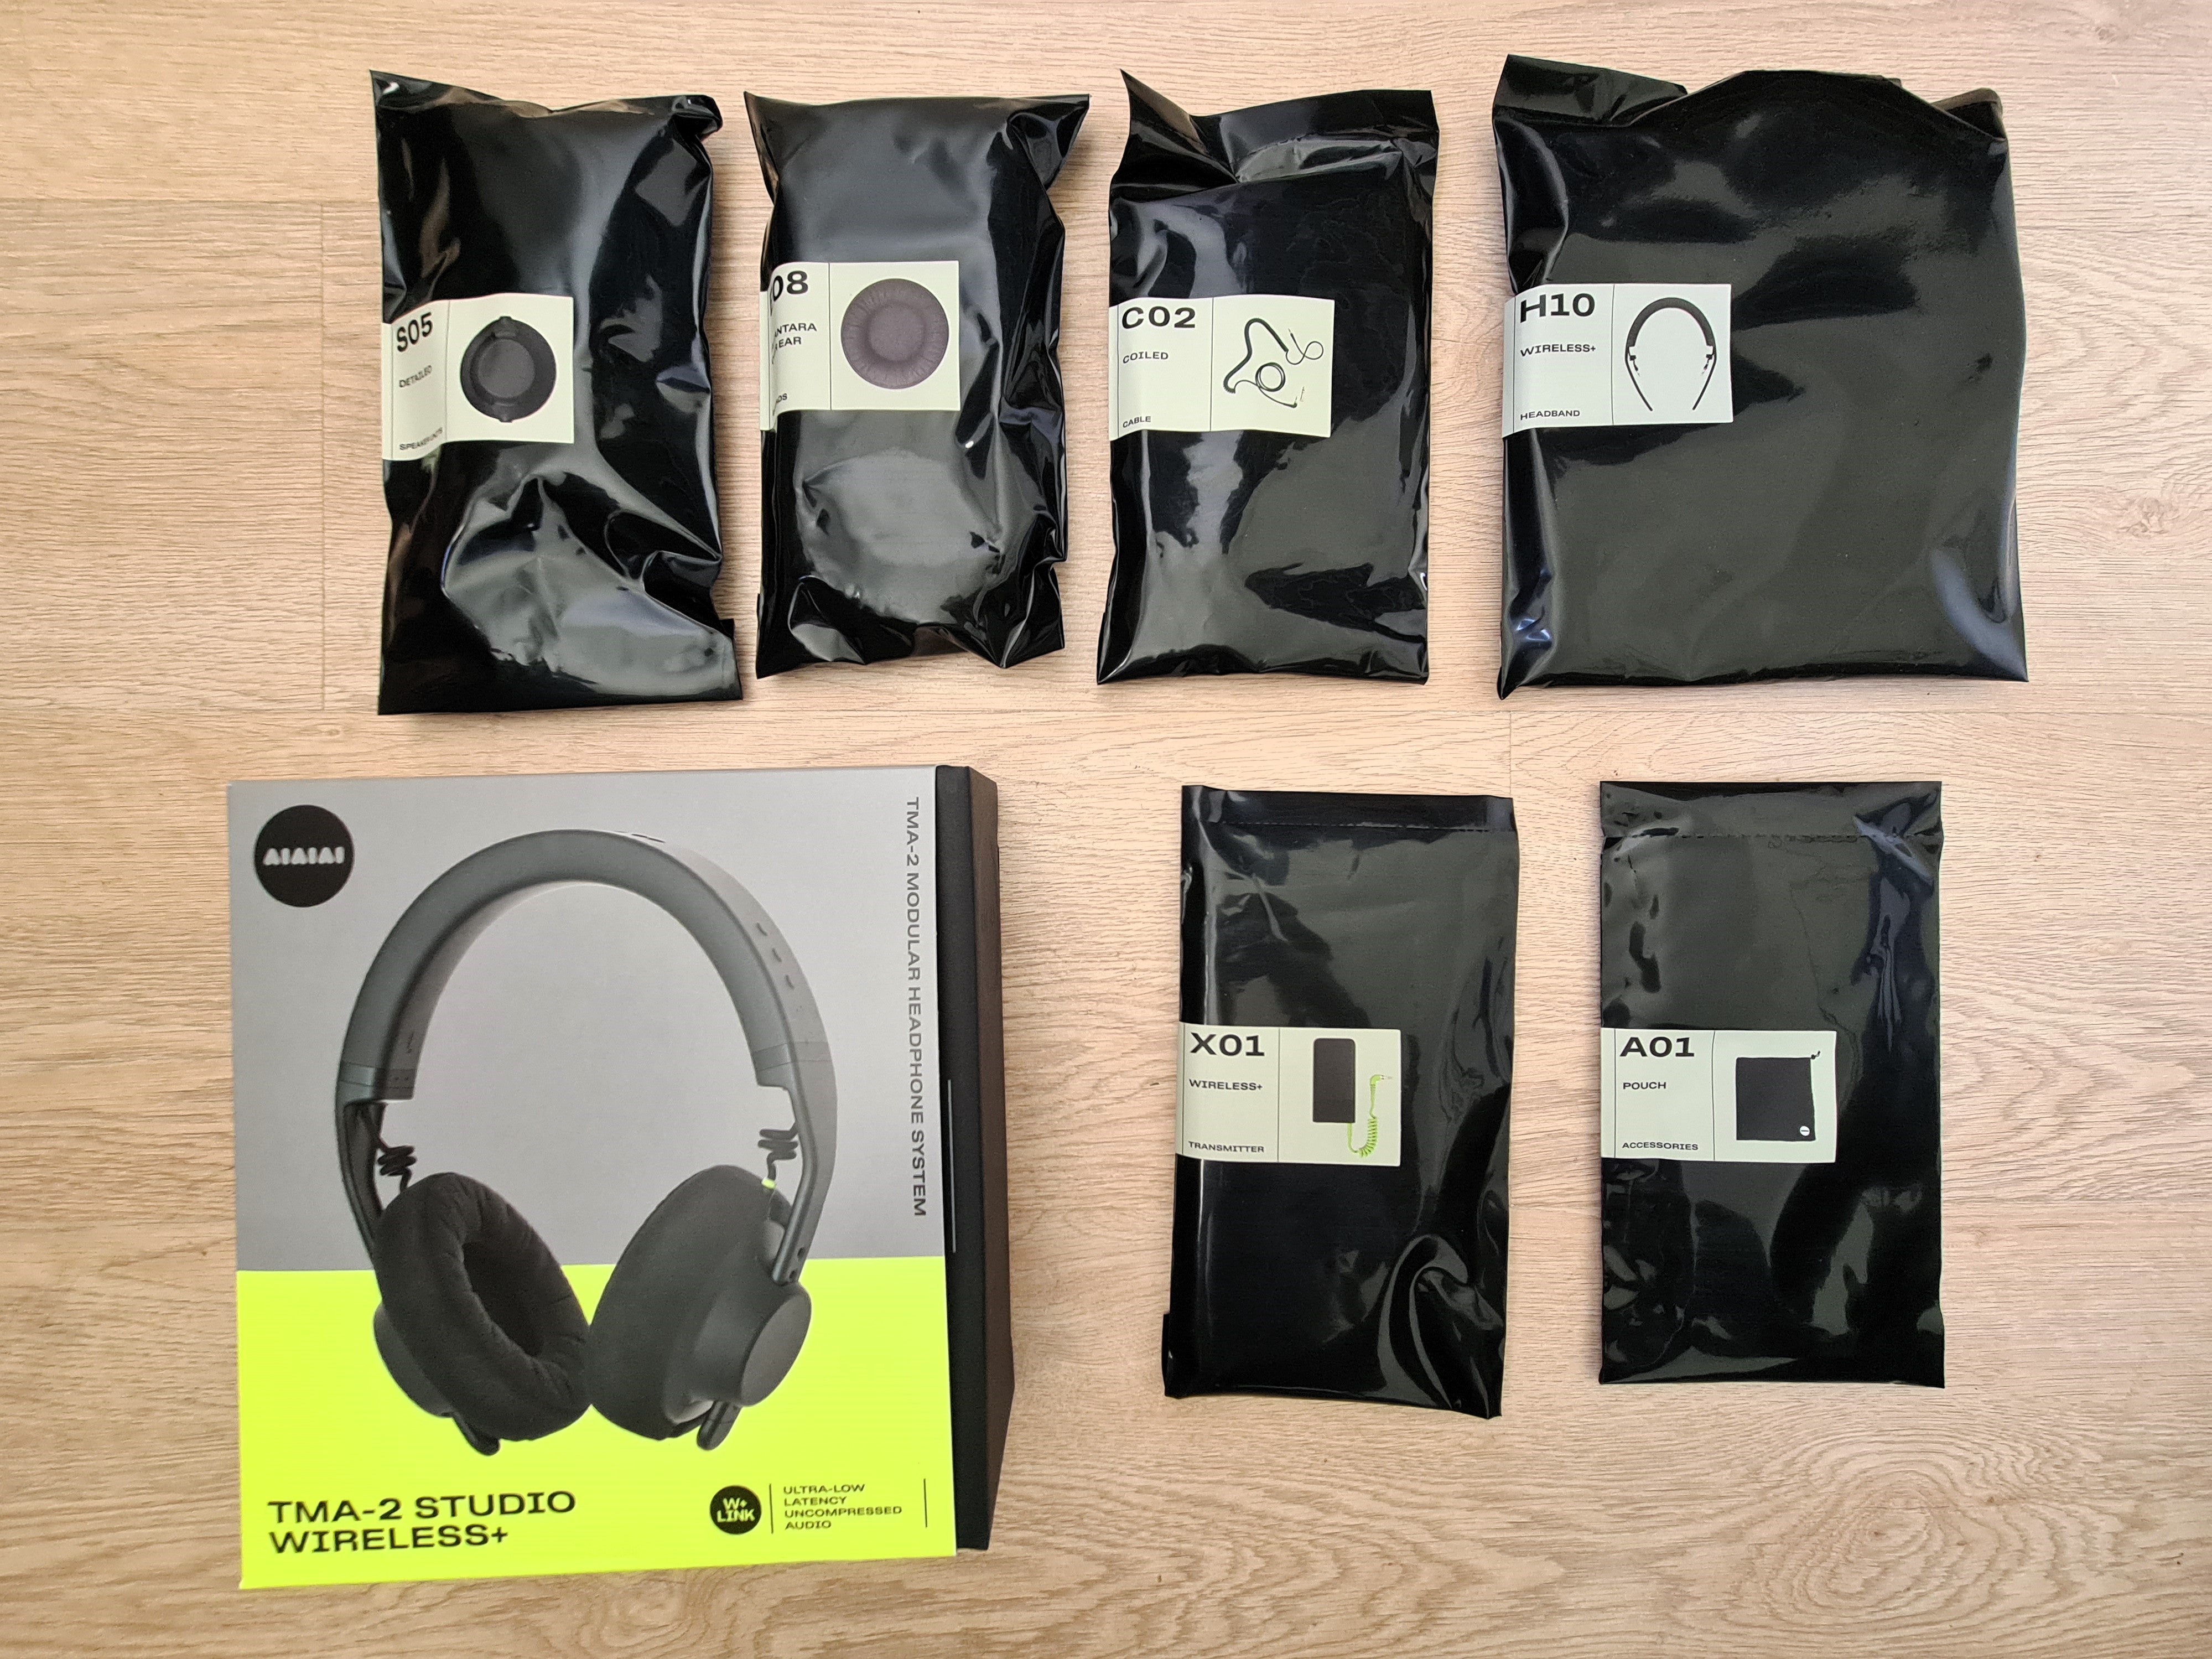 Unboxing the AIAIAI TMA-2 Studio Wireless+ headphones